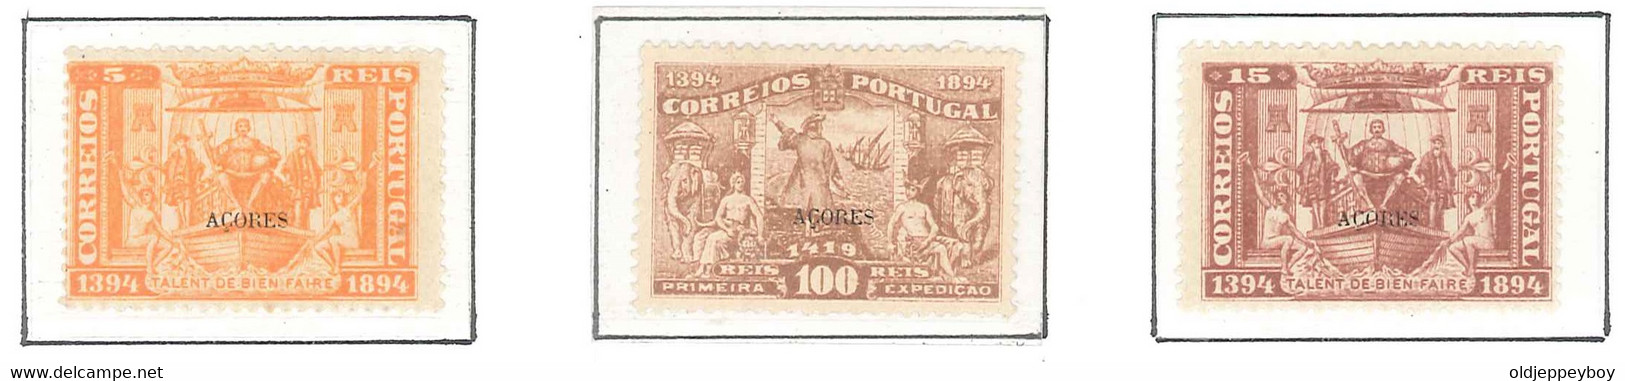 1894 Portugal  5º Centenário Nascimento Infante D. Henrique MH/MLH/MNH ORIGINAL GUM 5, 15, 100 Rs AZORES AÇORES  OVPT - Explorateurs